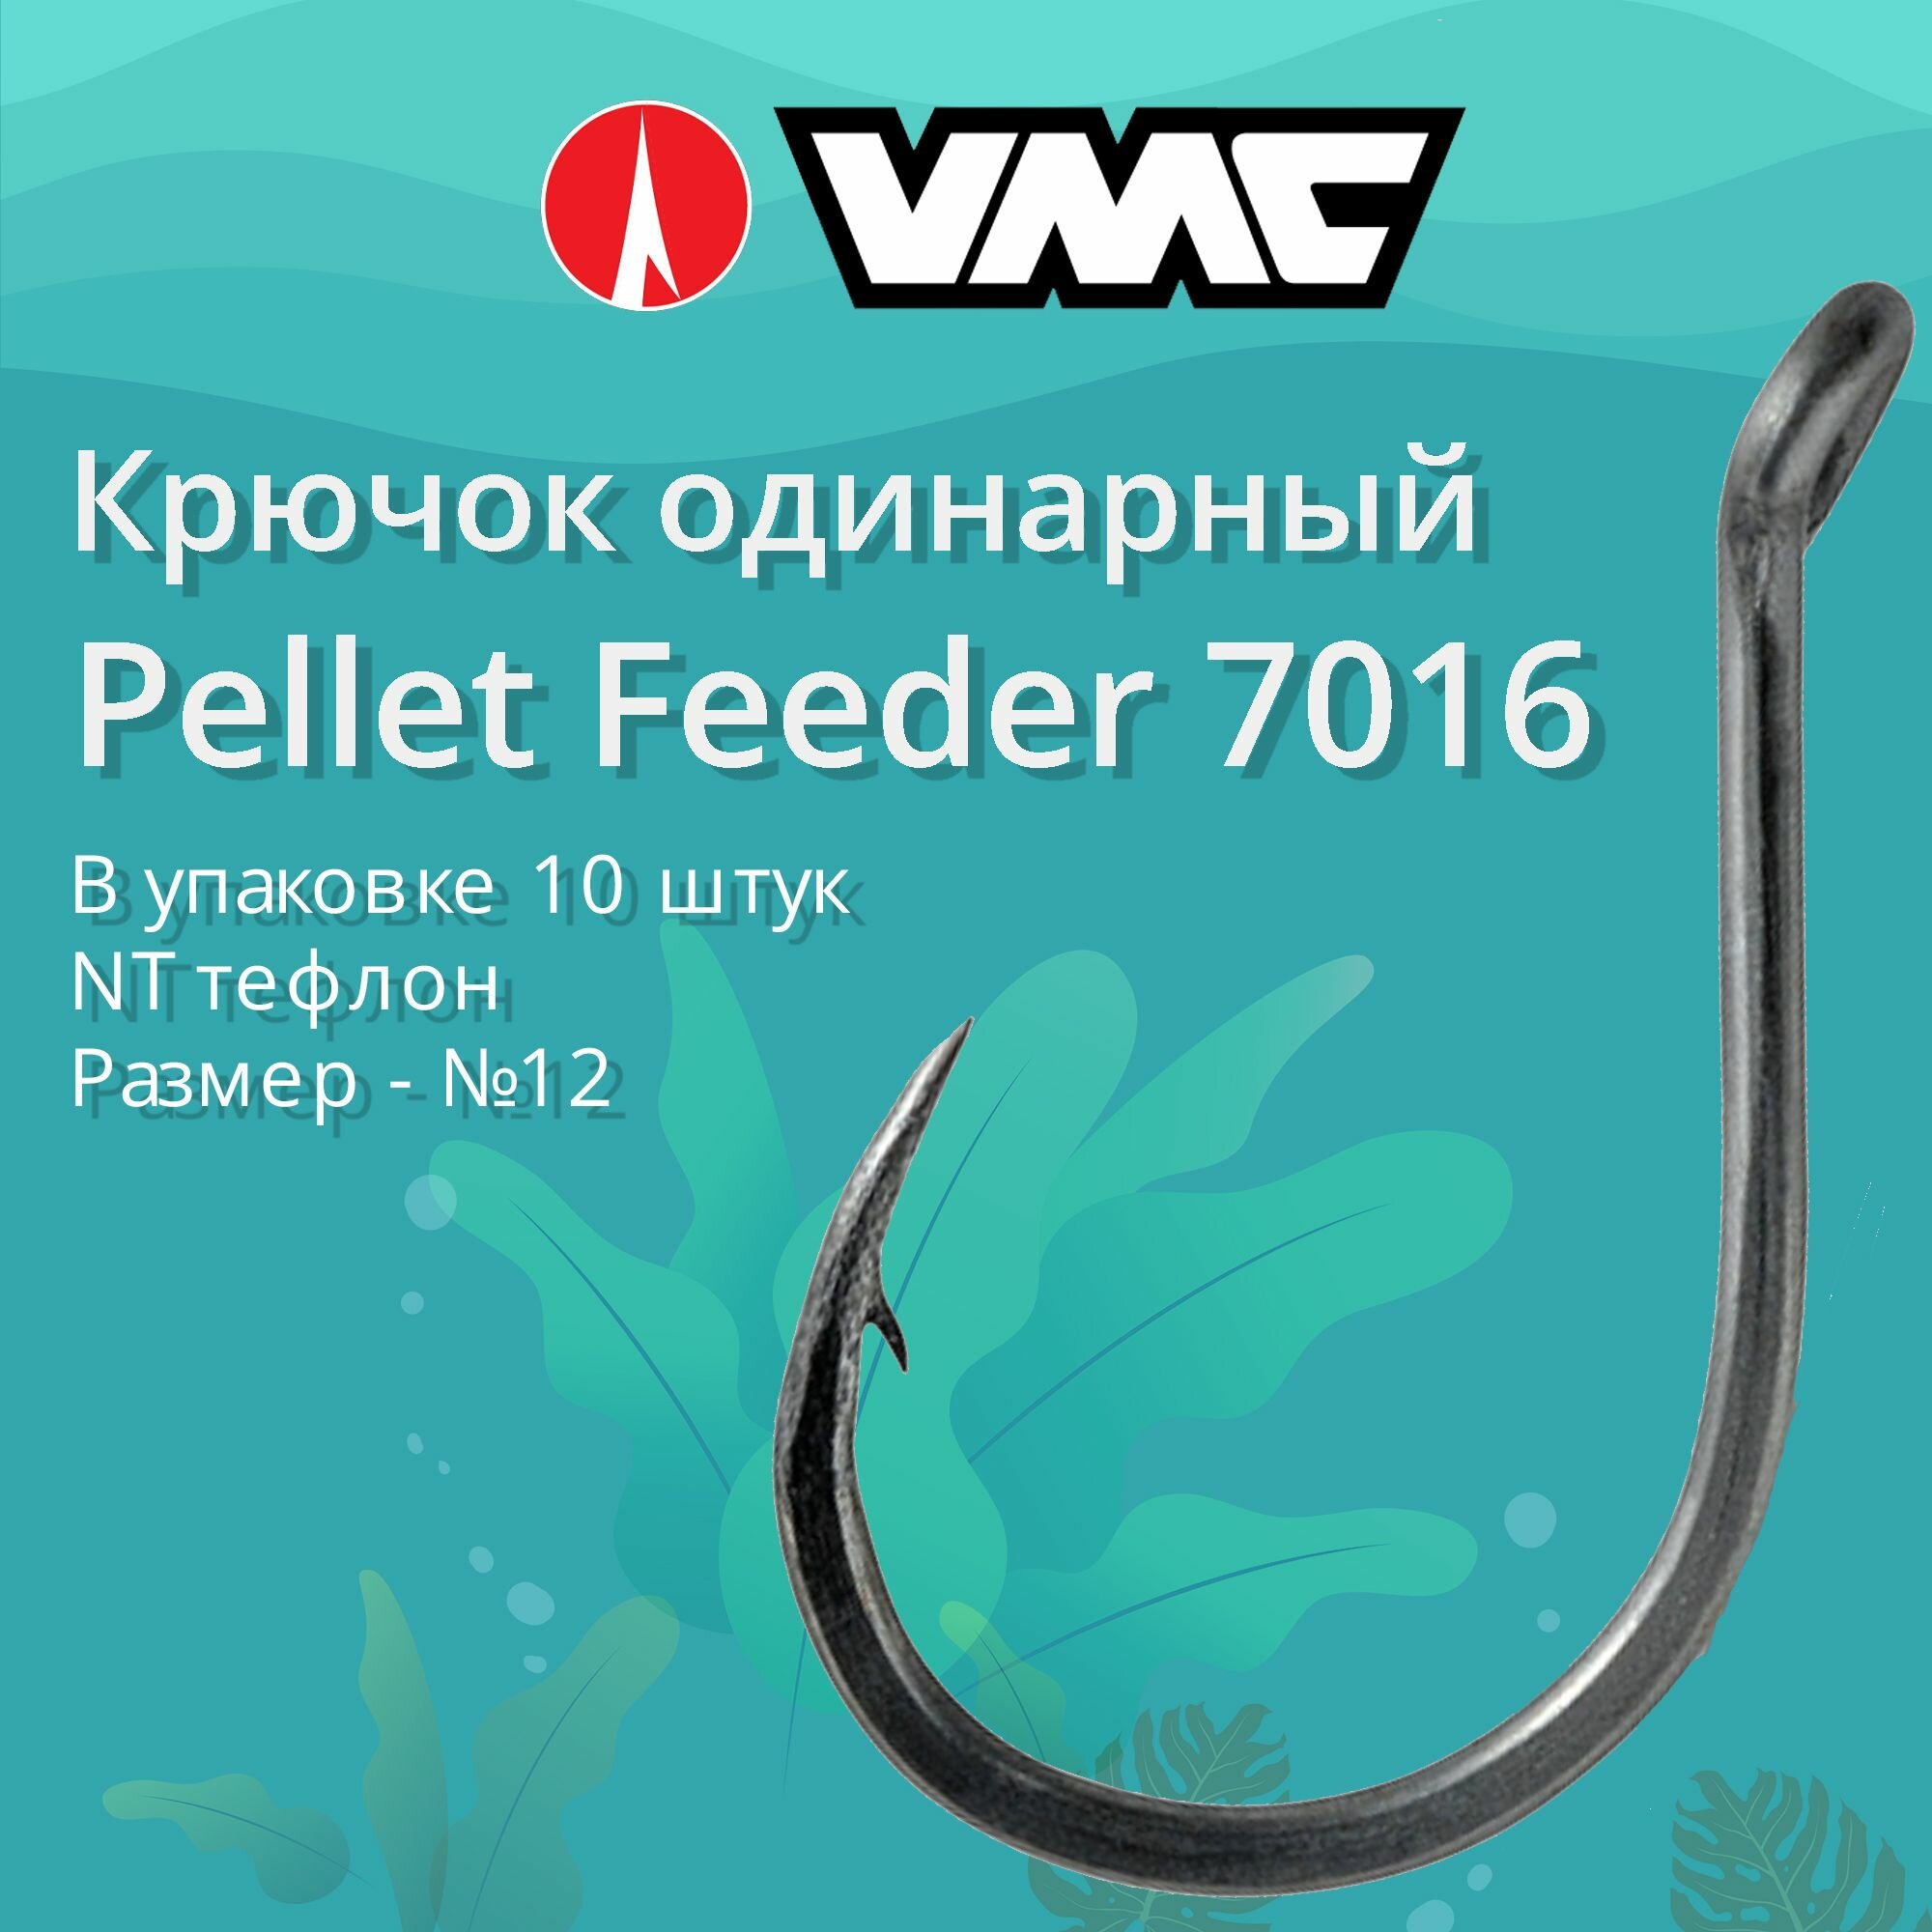 Крючки для рыбалки (одинарный) VMC Pellet Feeder 7016 NT (тефлон) №12 упаковка 10 штук